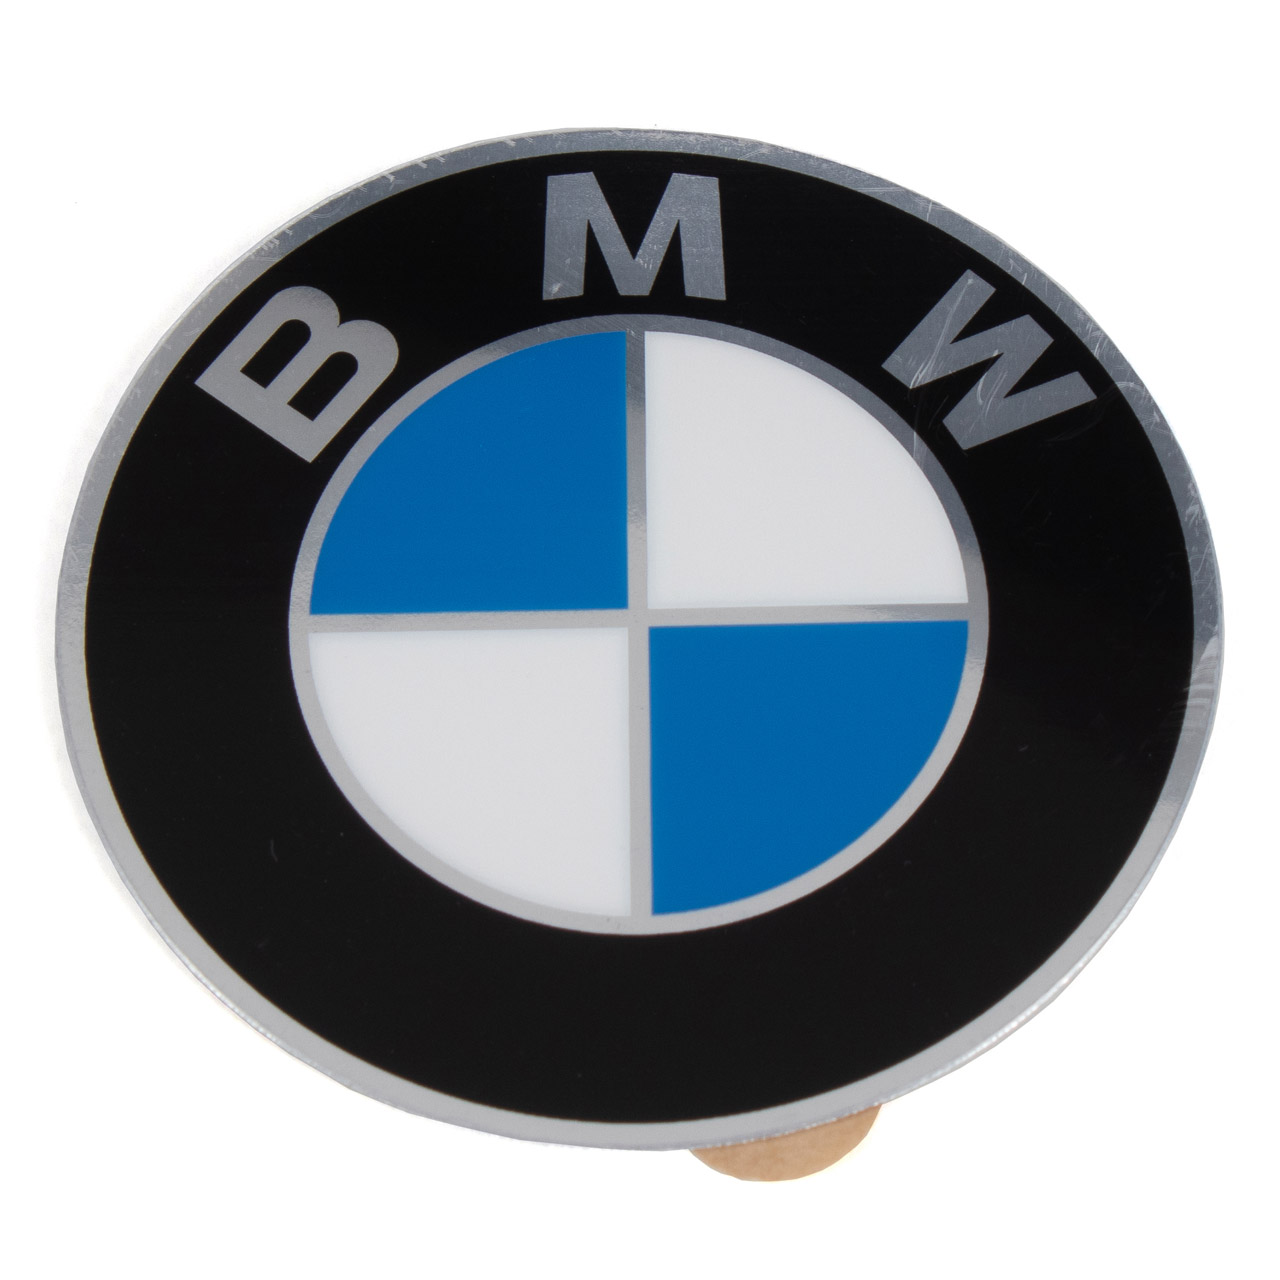 4x ORIGINAL BMW Emblem Logo Felgenaufkleber Kappe Ø 60mm E3 E9 E10 E12 36131181105